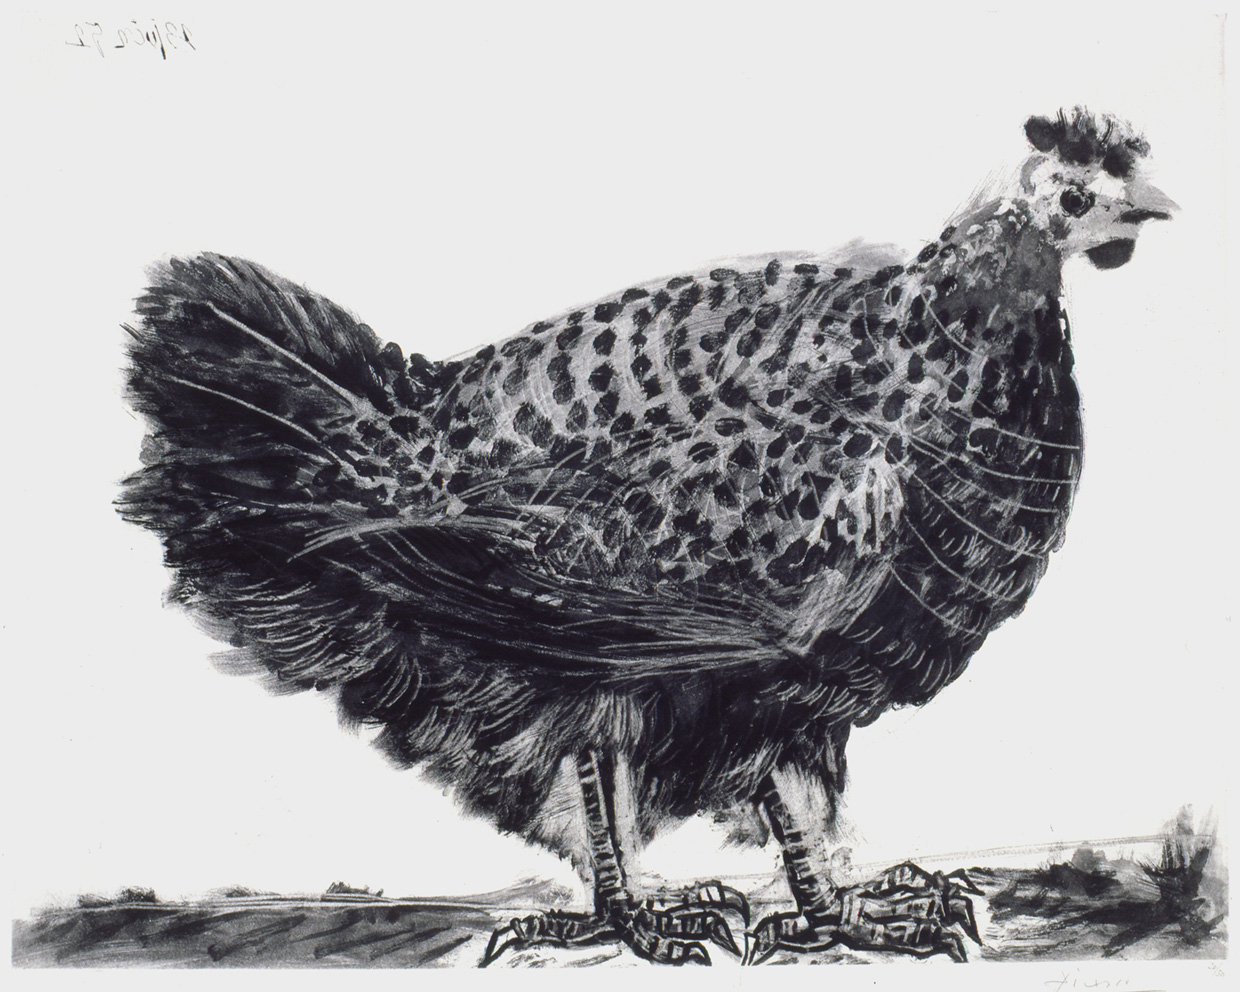 pablo-picasso-la-poule-1952